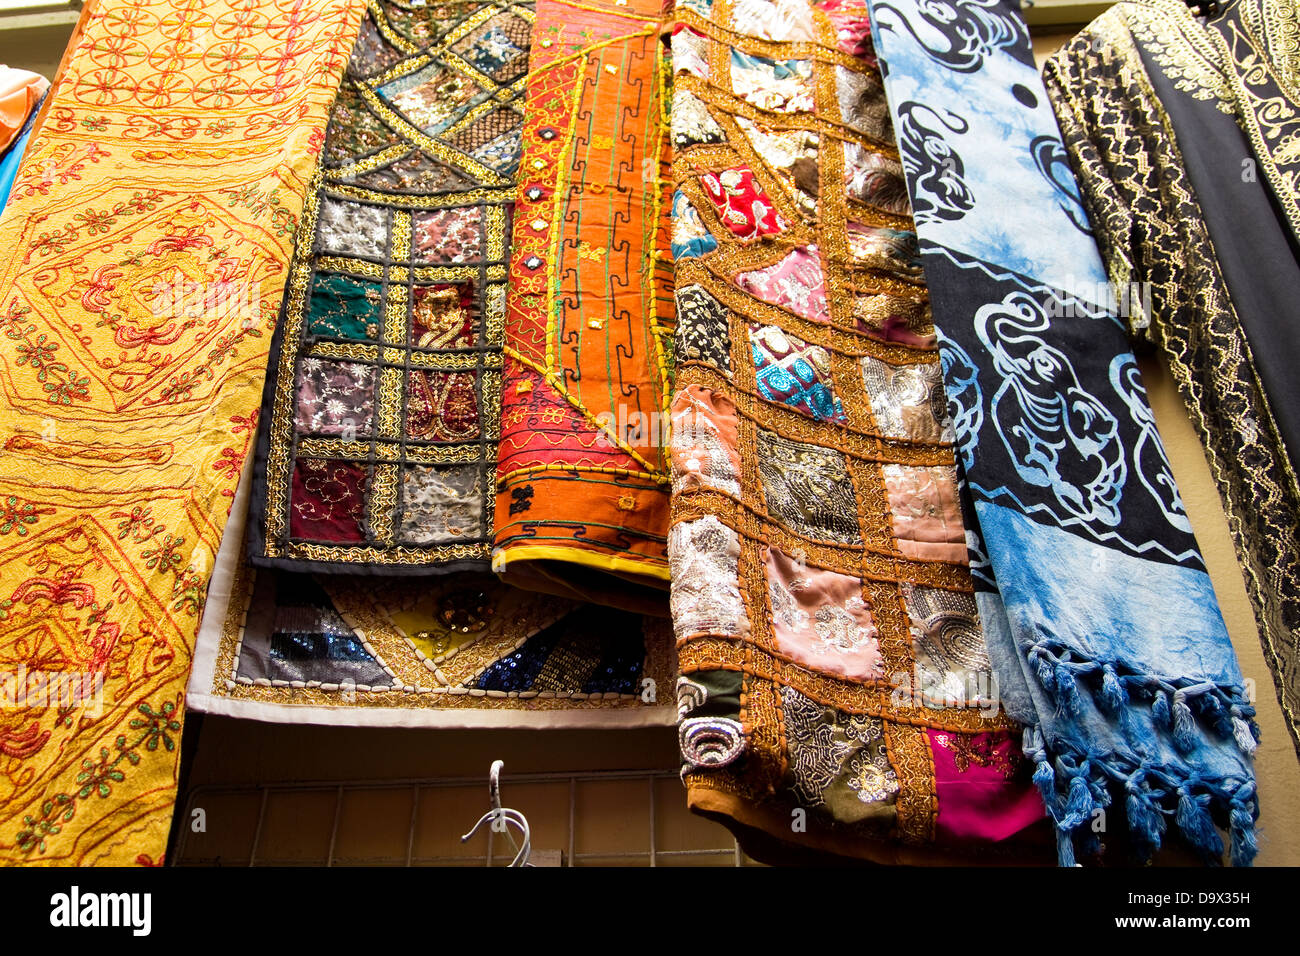 Stoffe und Schals auf einem orientalischen Markt. Granada, Andalusien,  Spanien Stockfotografie - Alamy